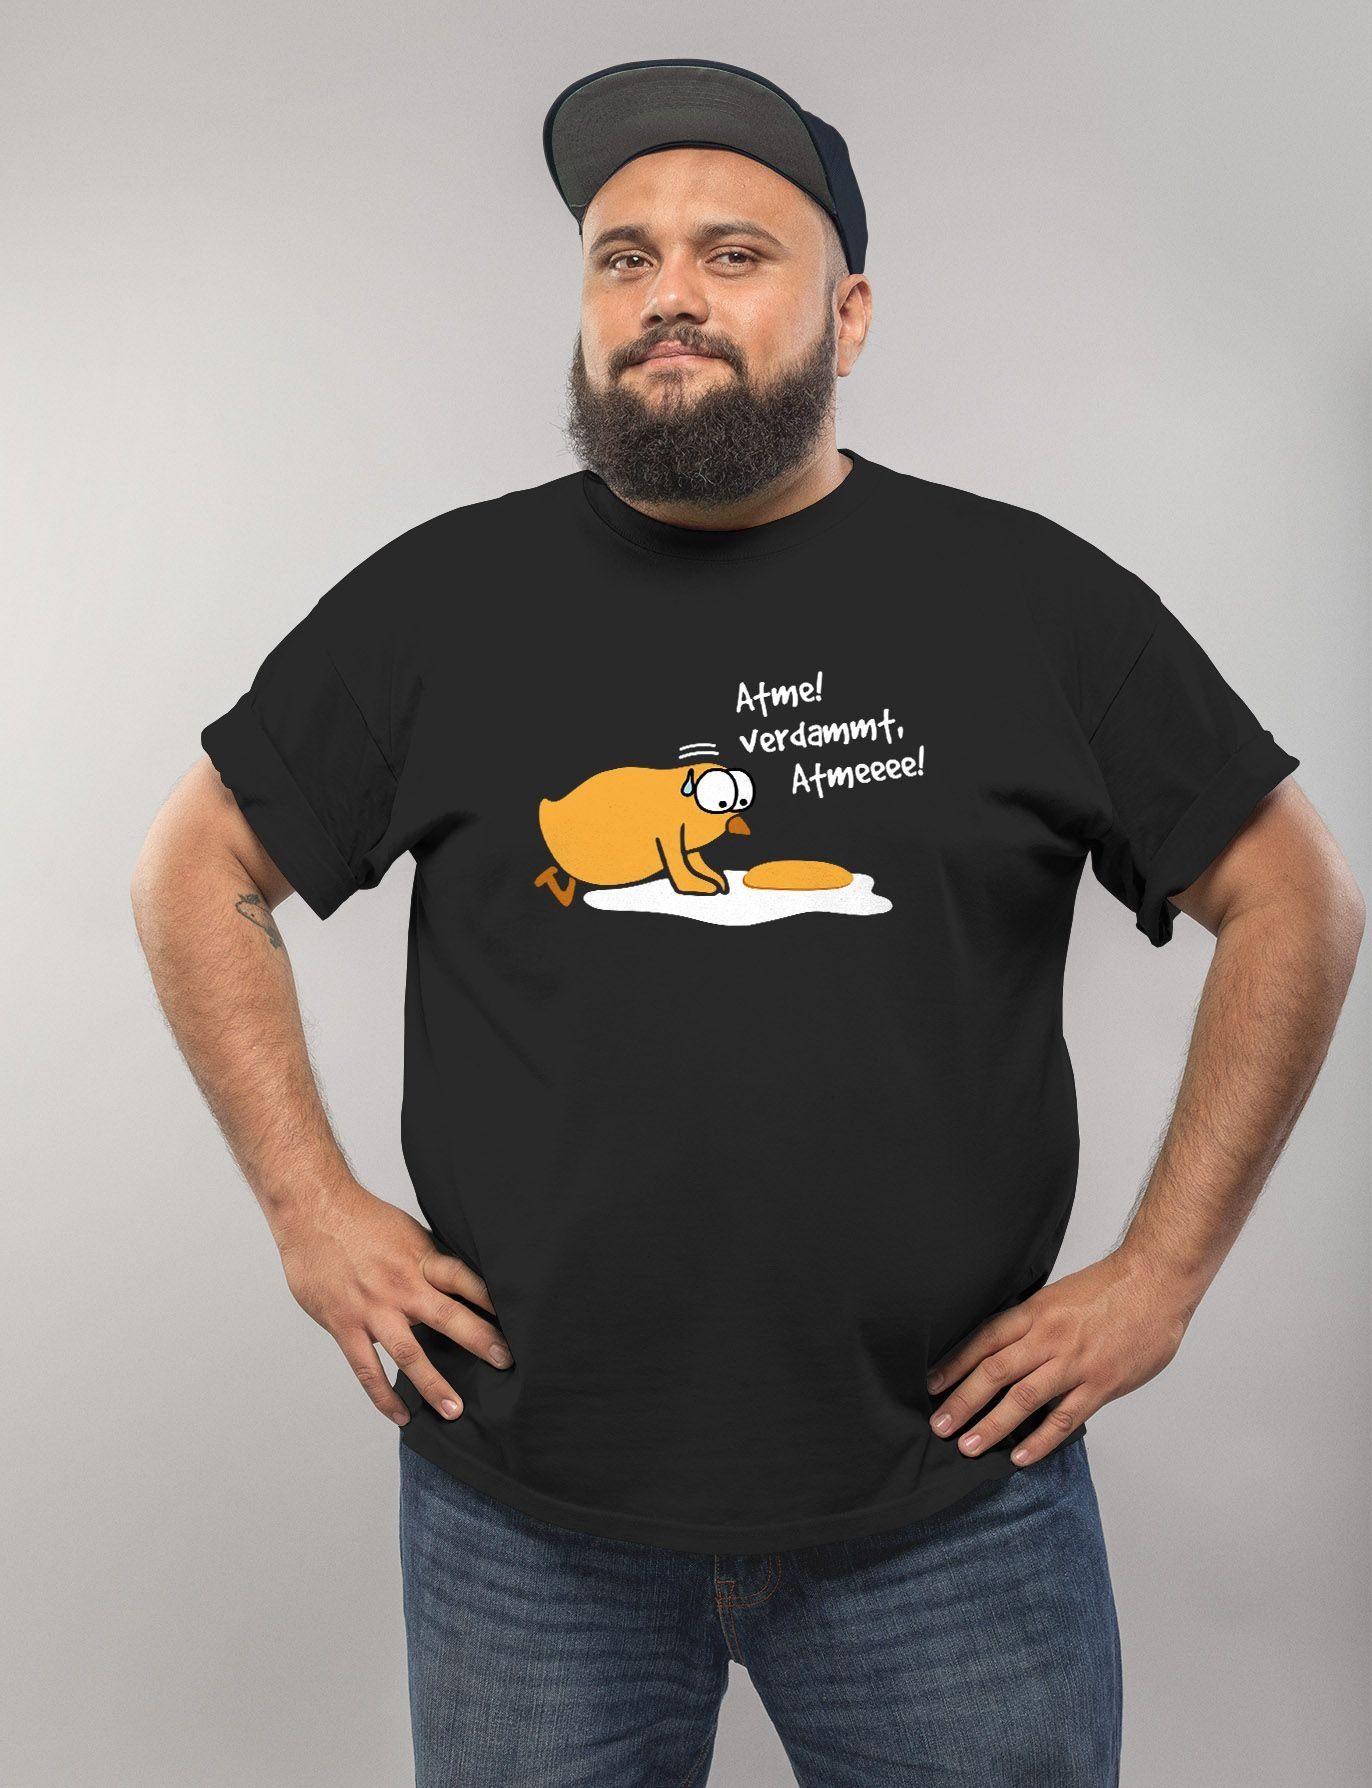 MoonWorks Print-Shirt Atme! Verdammt Print Küken Spiegelei lustig Spruch Fun-Shirt Moonworks® Herren T-Shirt mit Aufdruck